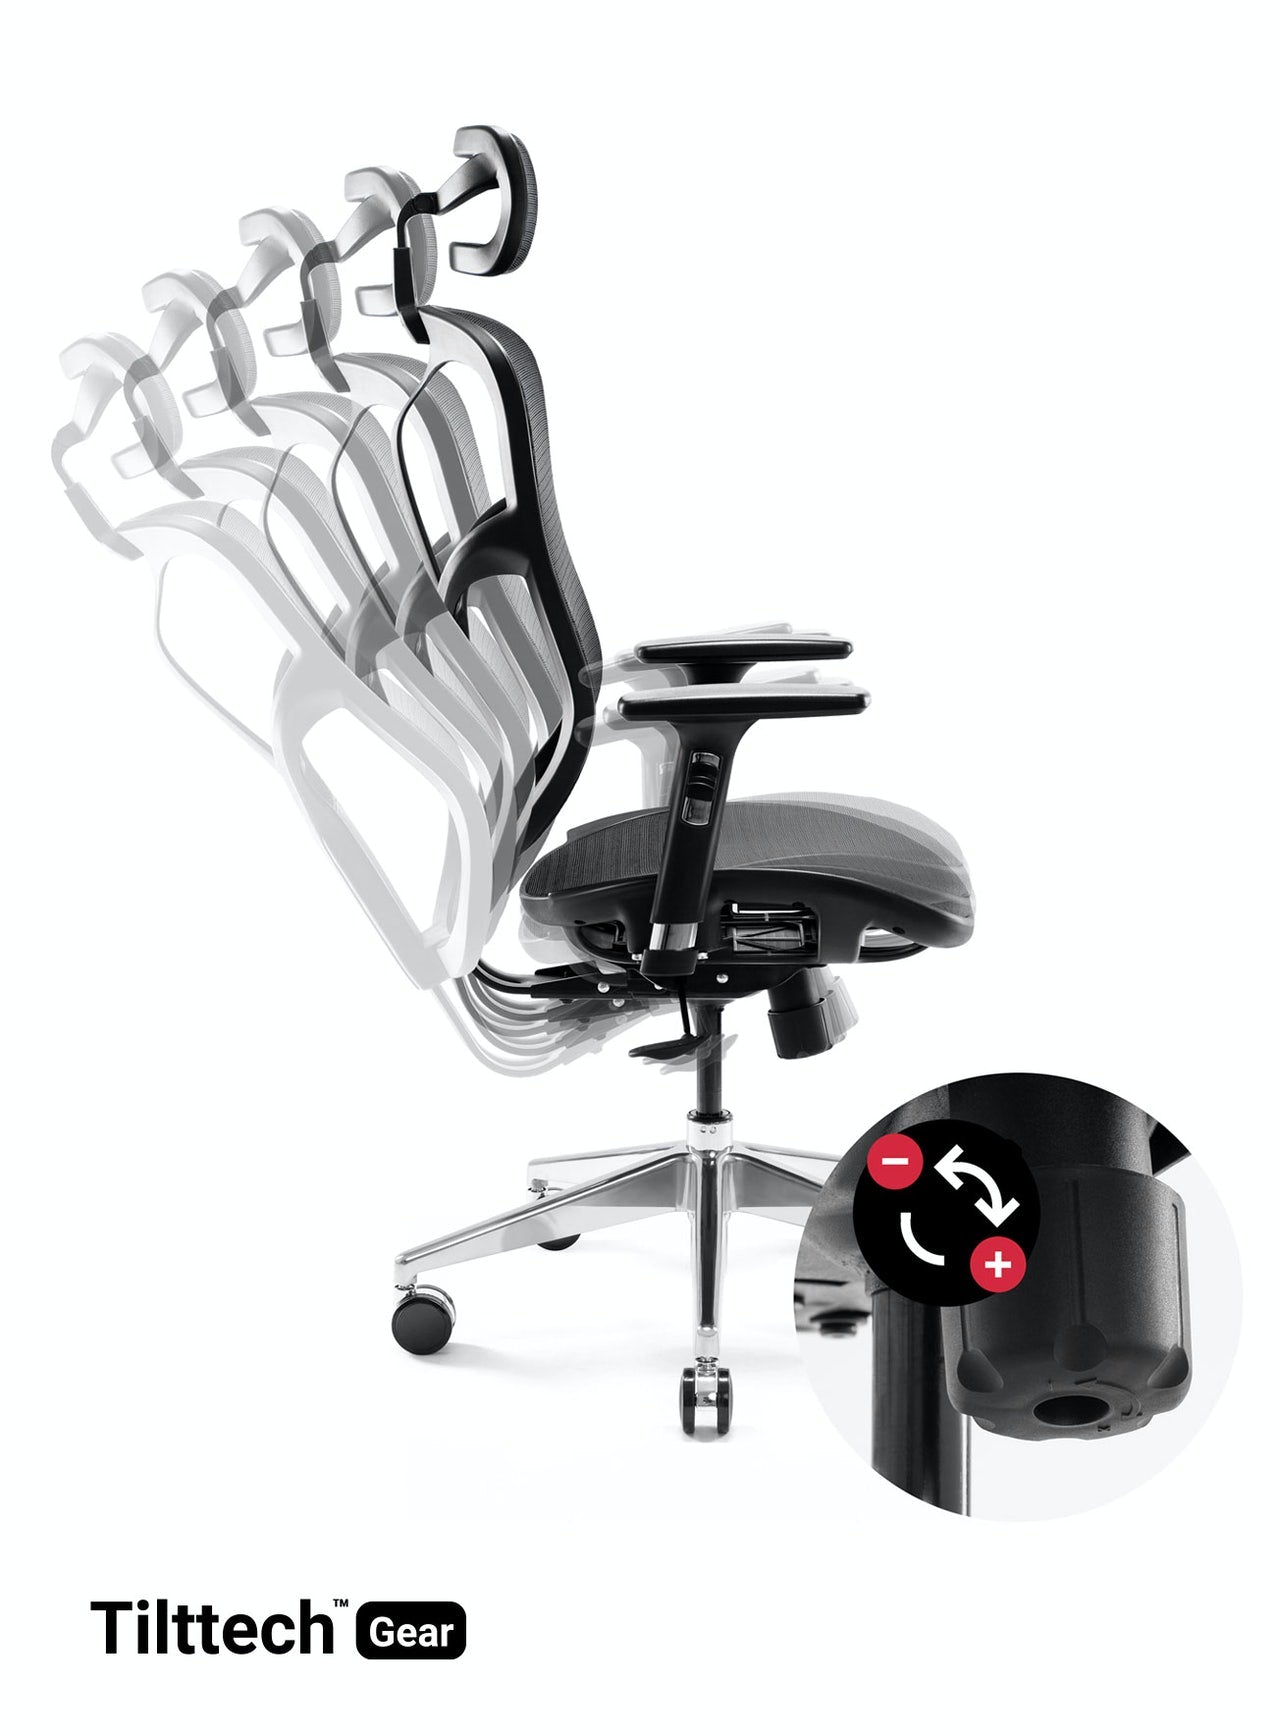 Scaun ergonomic multifunctional VE 5903 Negru, sprijin gât, spătar/cotiere reglabil